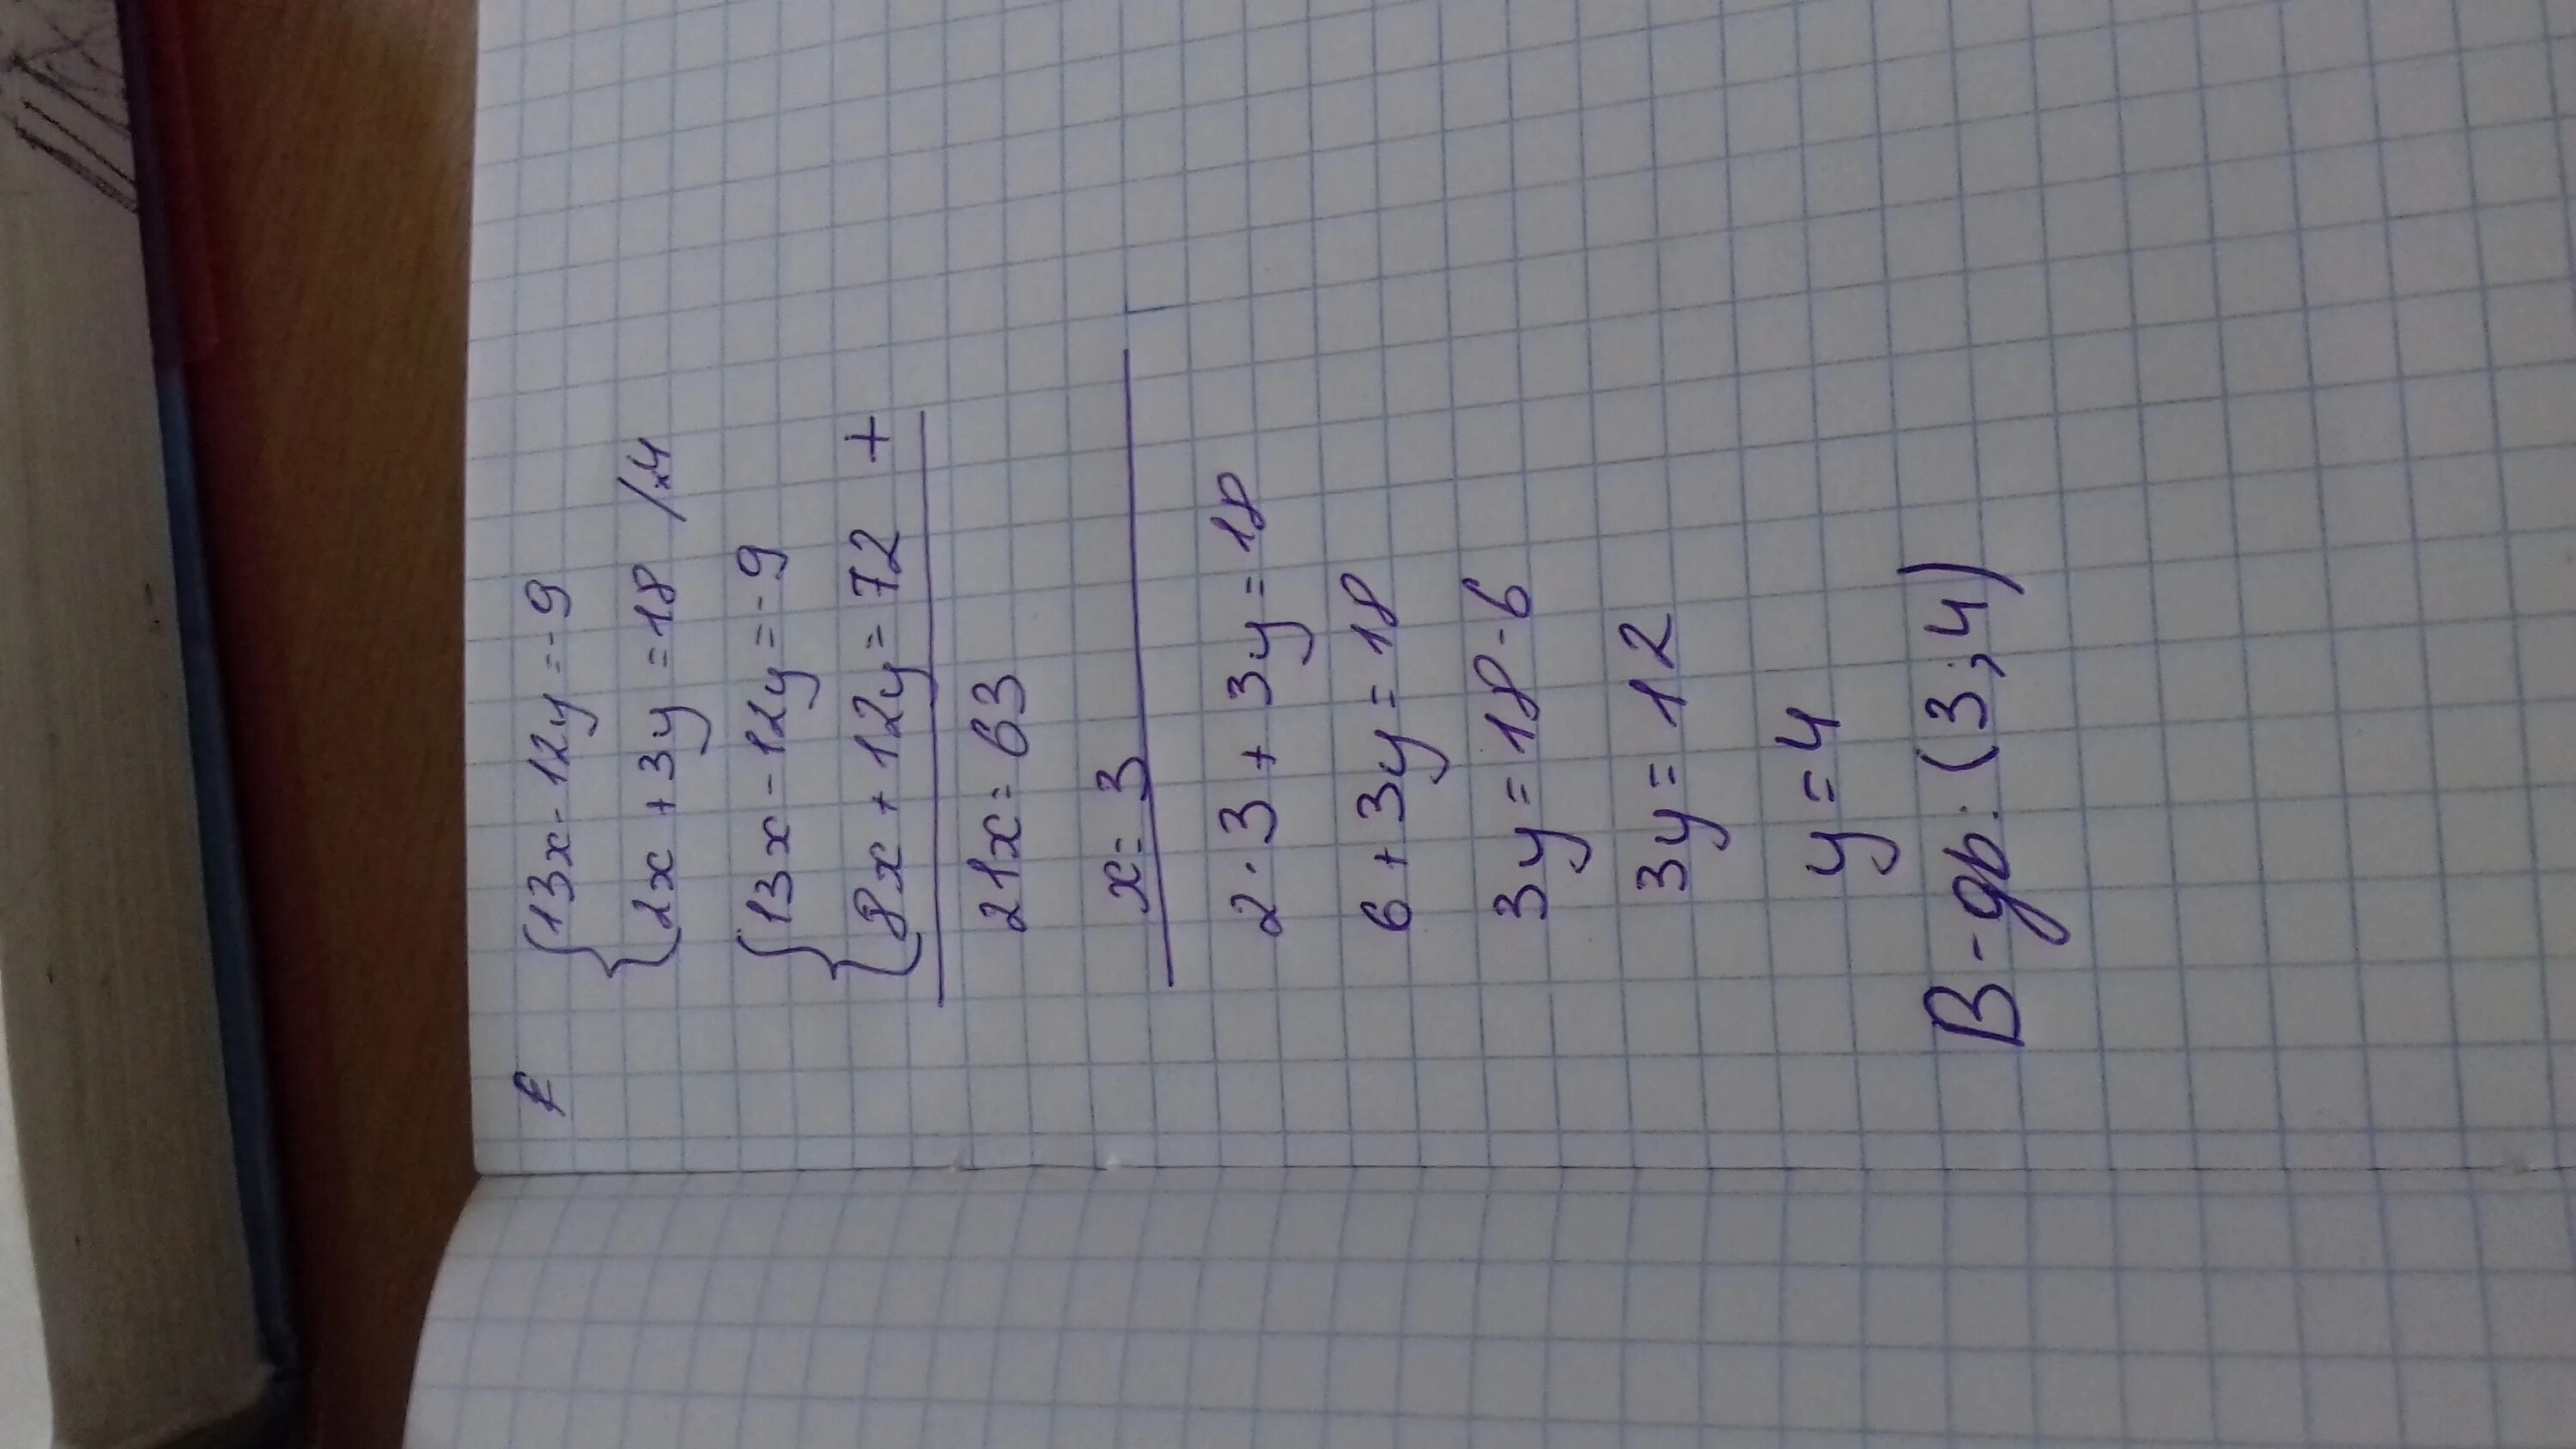 9/3*2. 4х-у=13 5х+3у=12. 3х-9у=12. 9 3 12 Х Х-?.